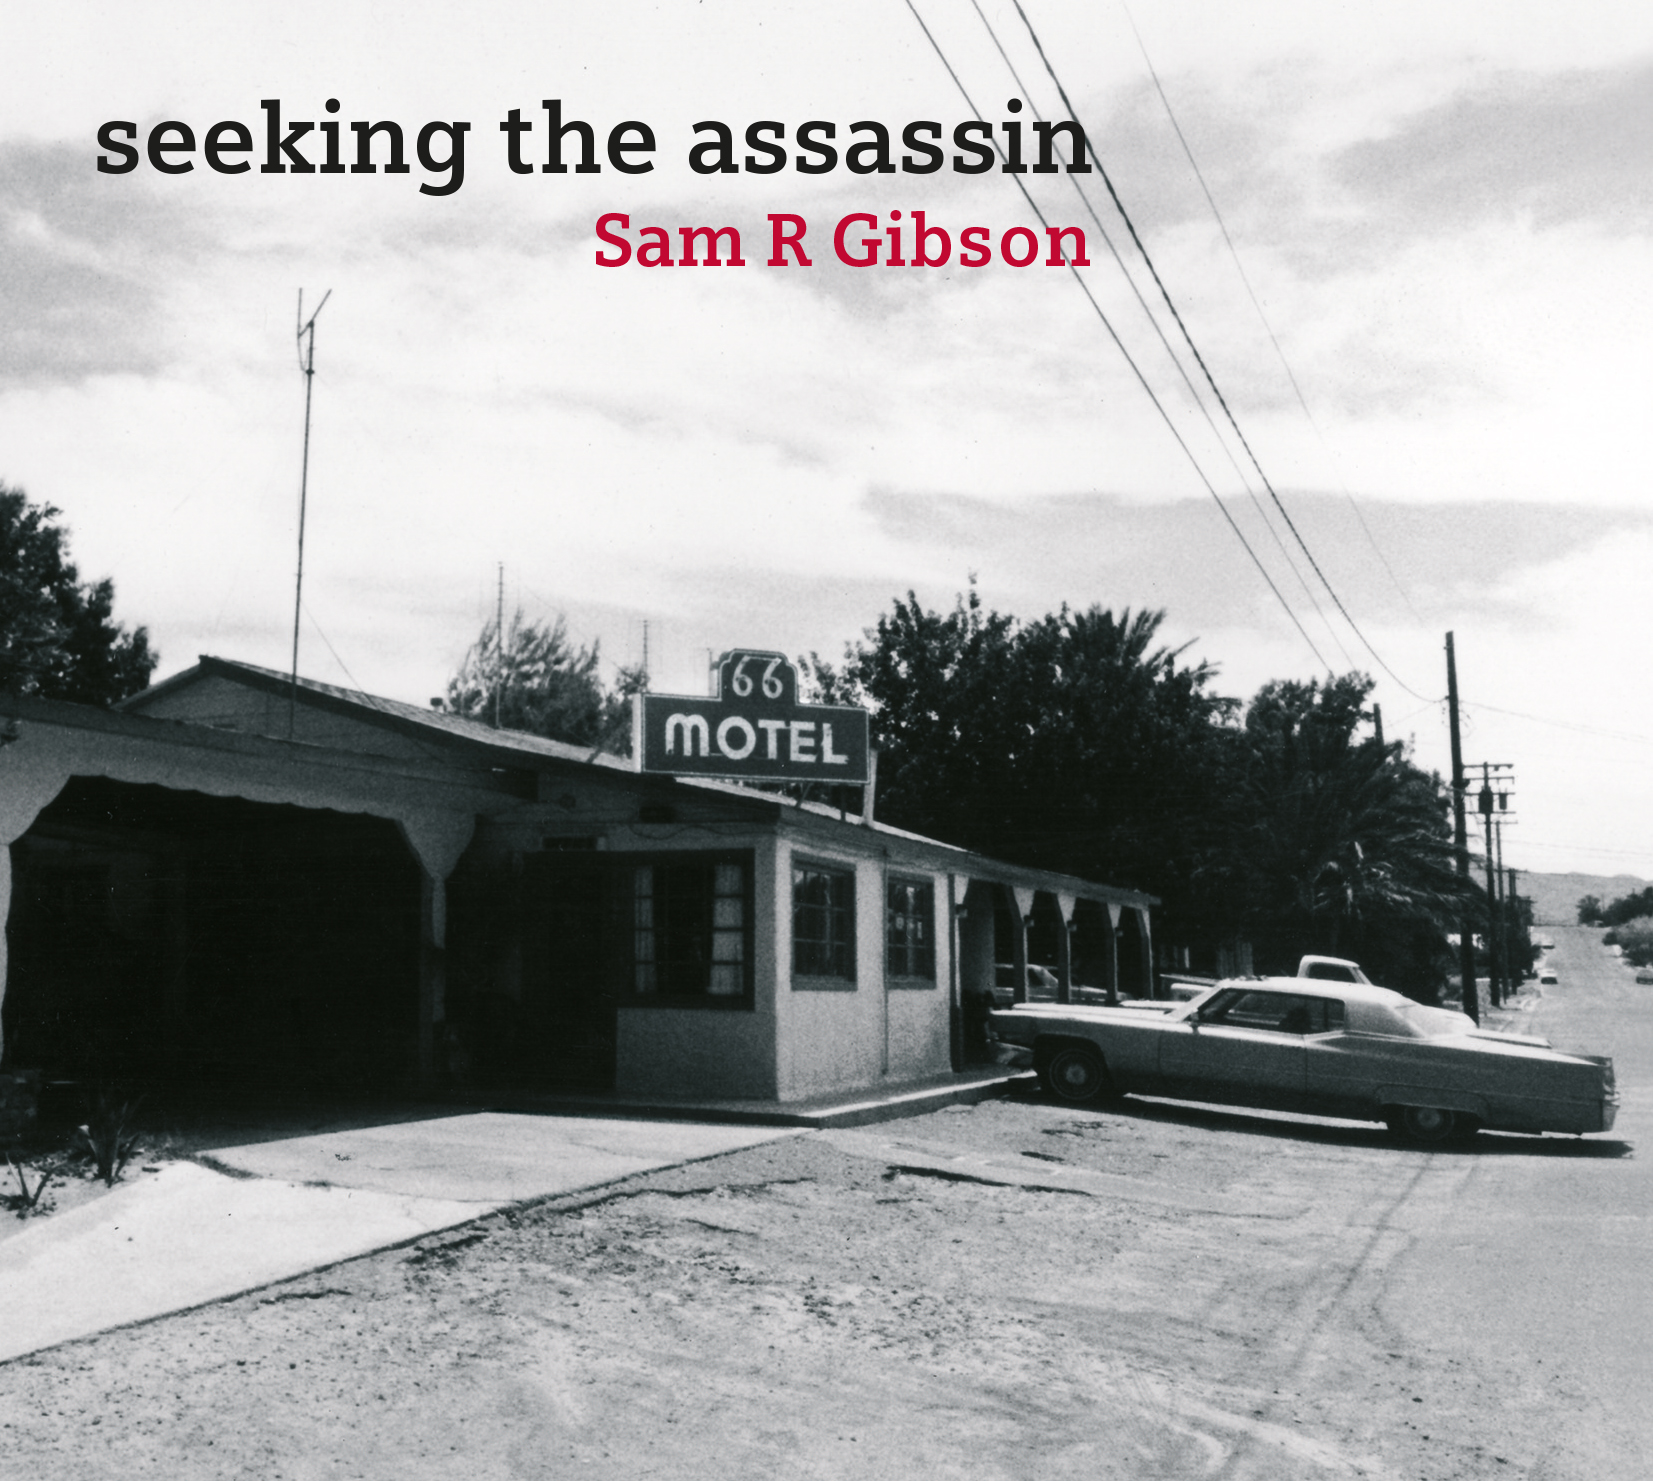 Seeking The Assassin album cover